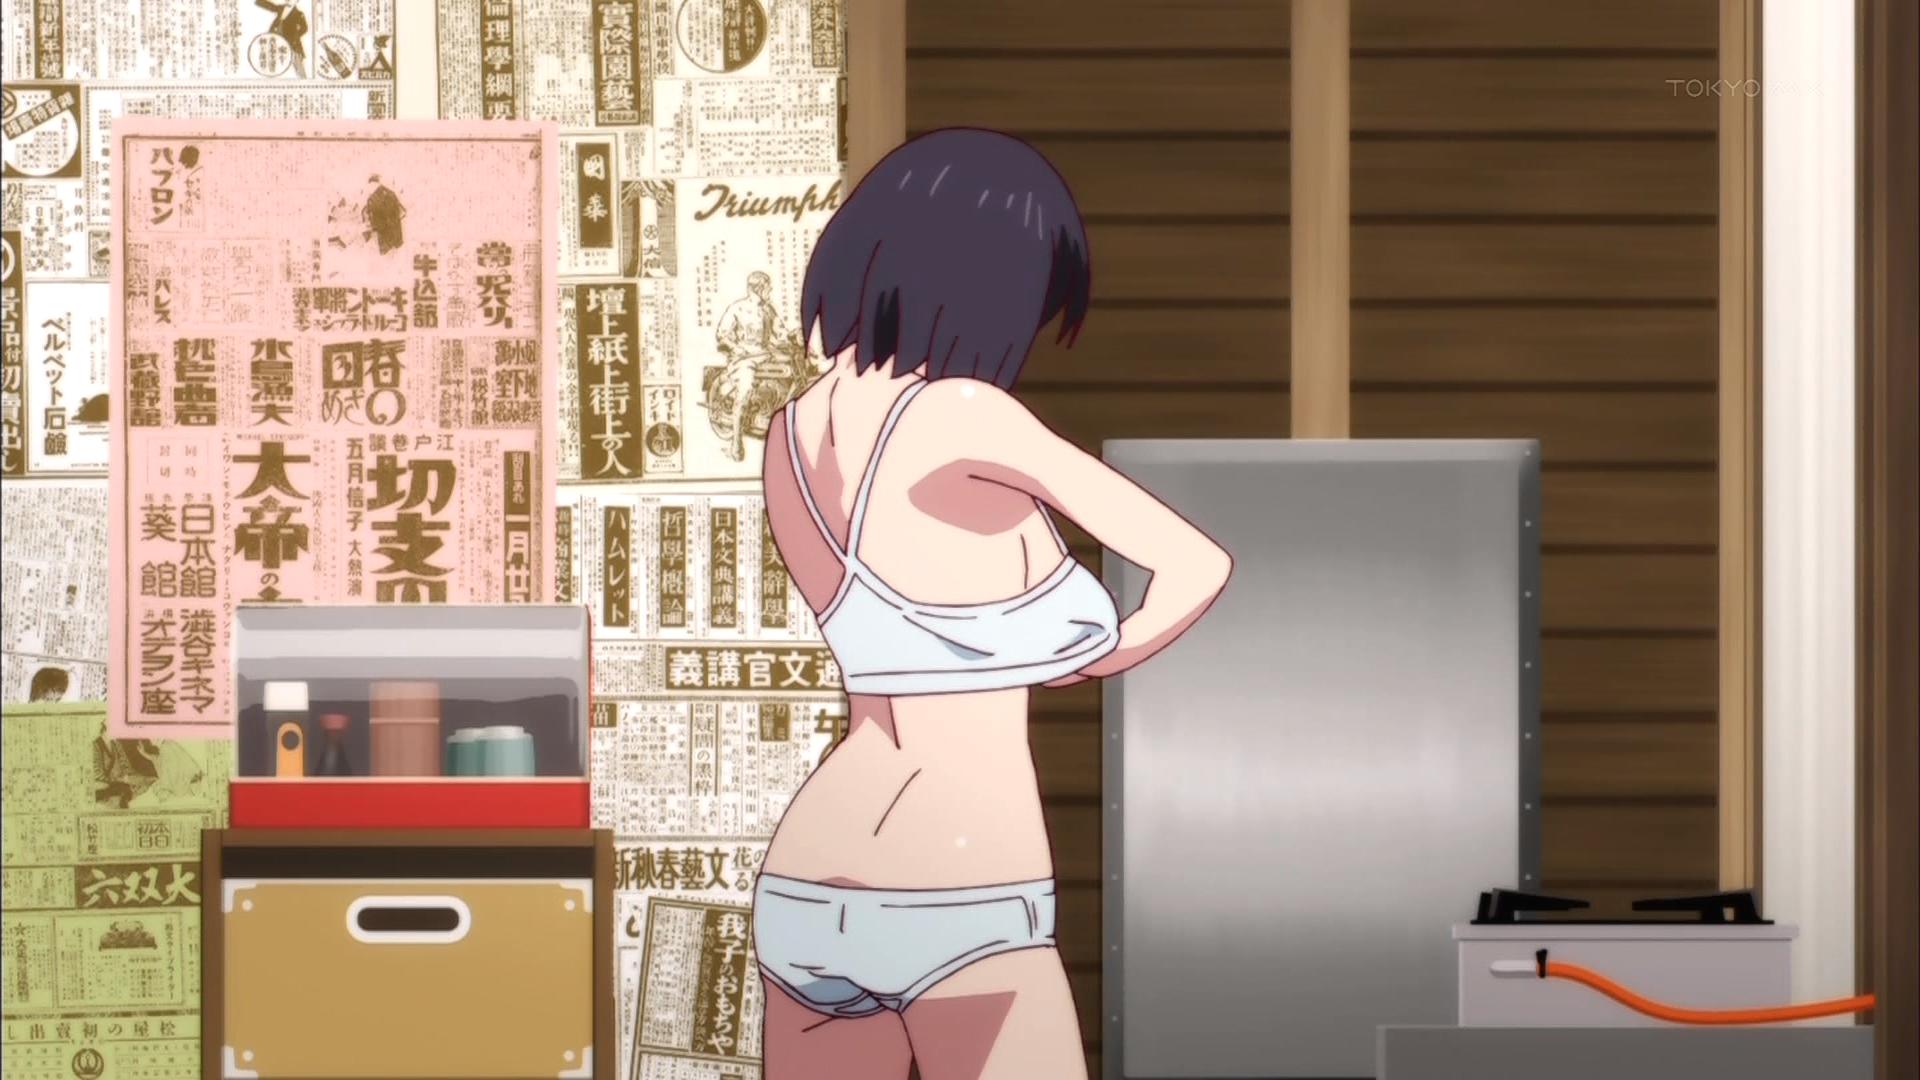 Nekomonogatari Shiro Bathtime Groping Anime - Sankaku Comple